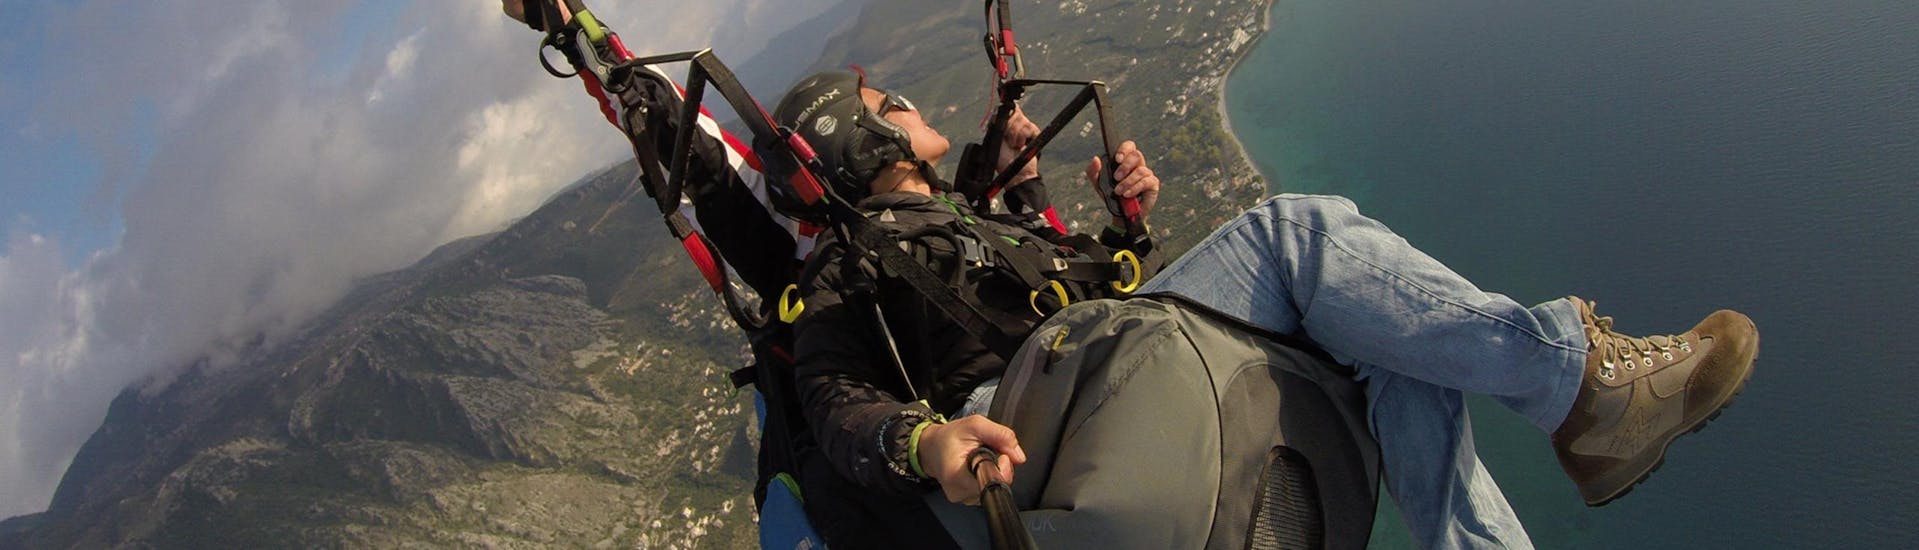 tandem-paragliding-athens-o2paragliding-hero